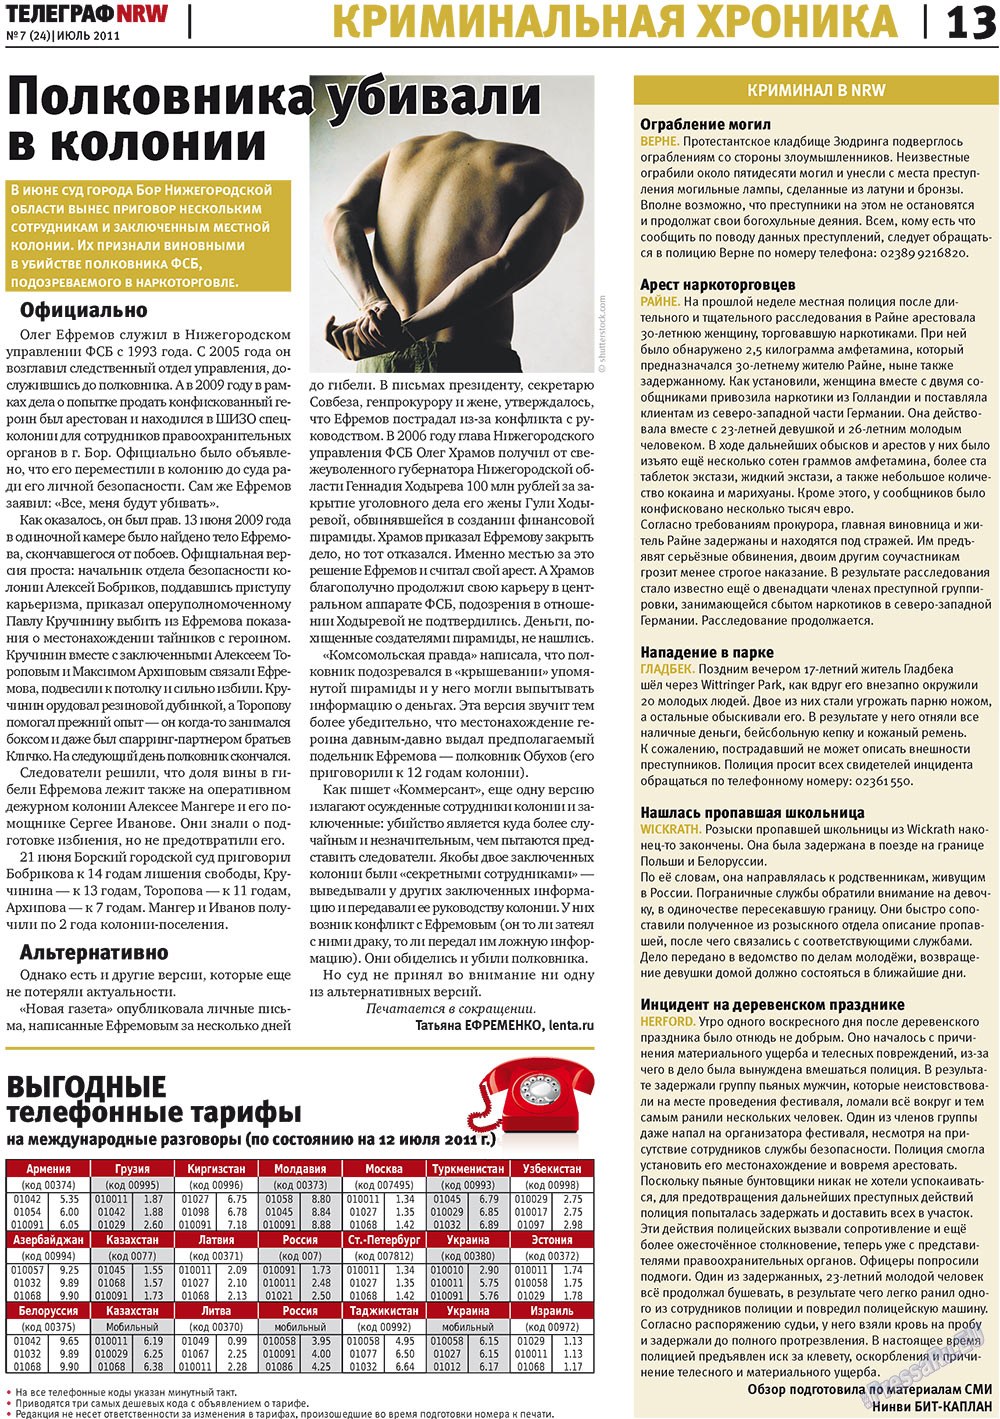 Телеграф NRW (газета). 2011 год, номер 7, стр. 13